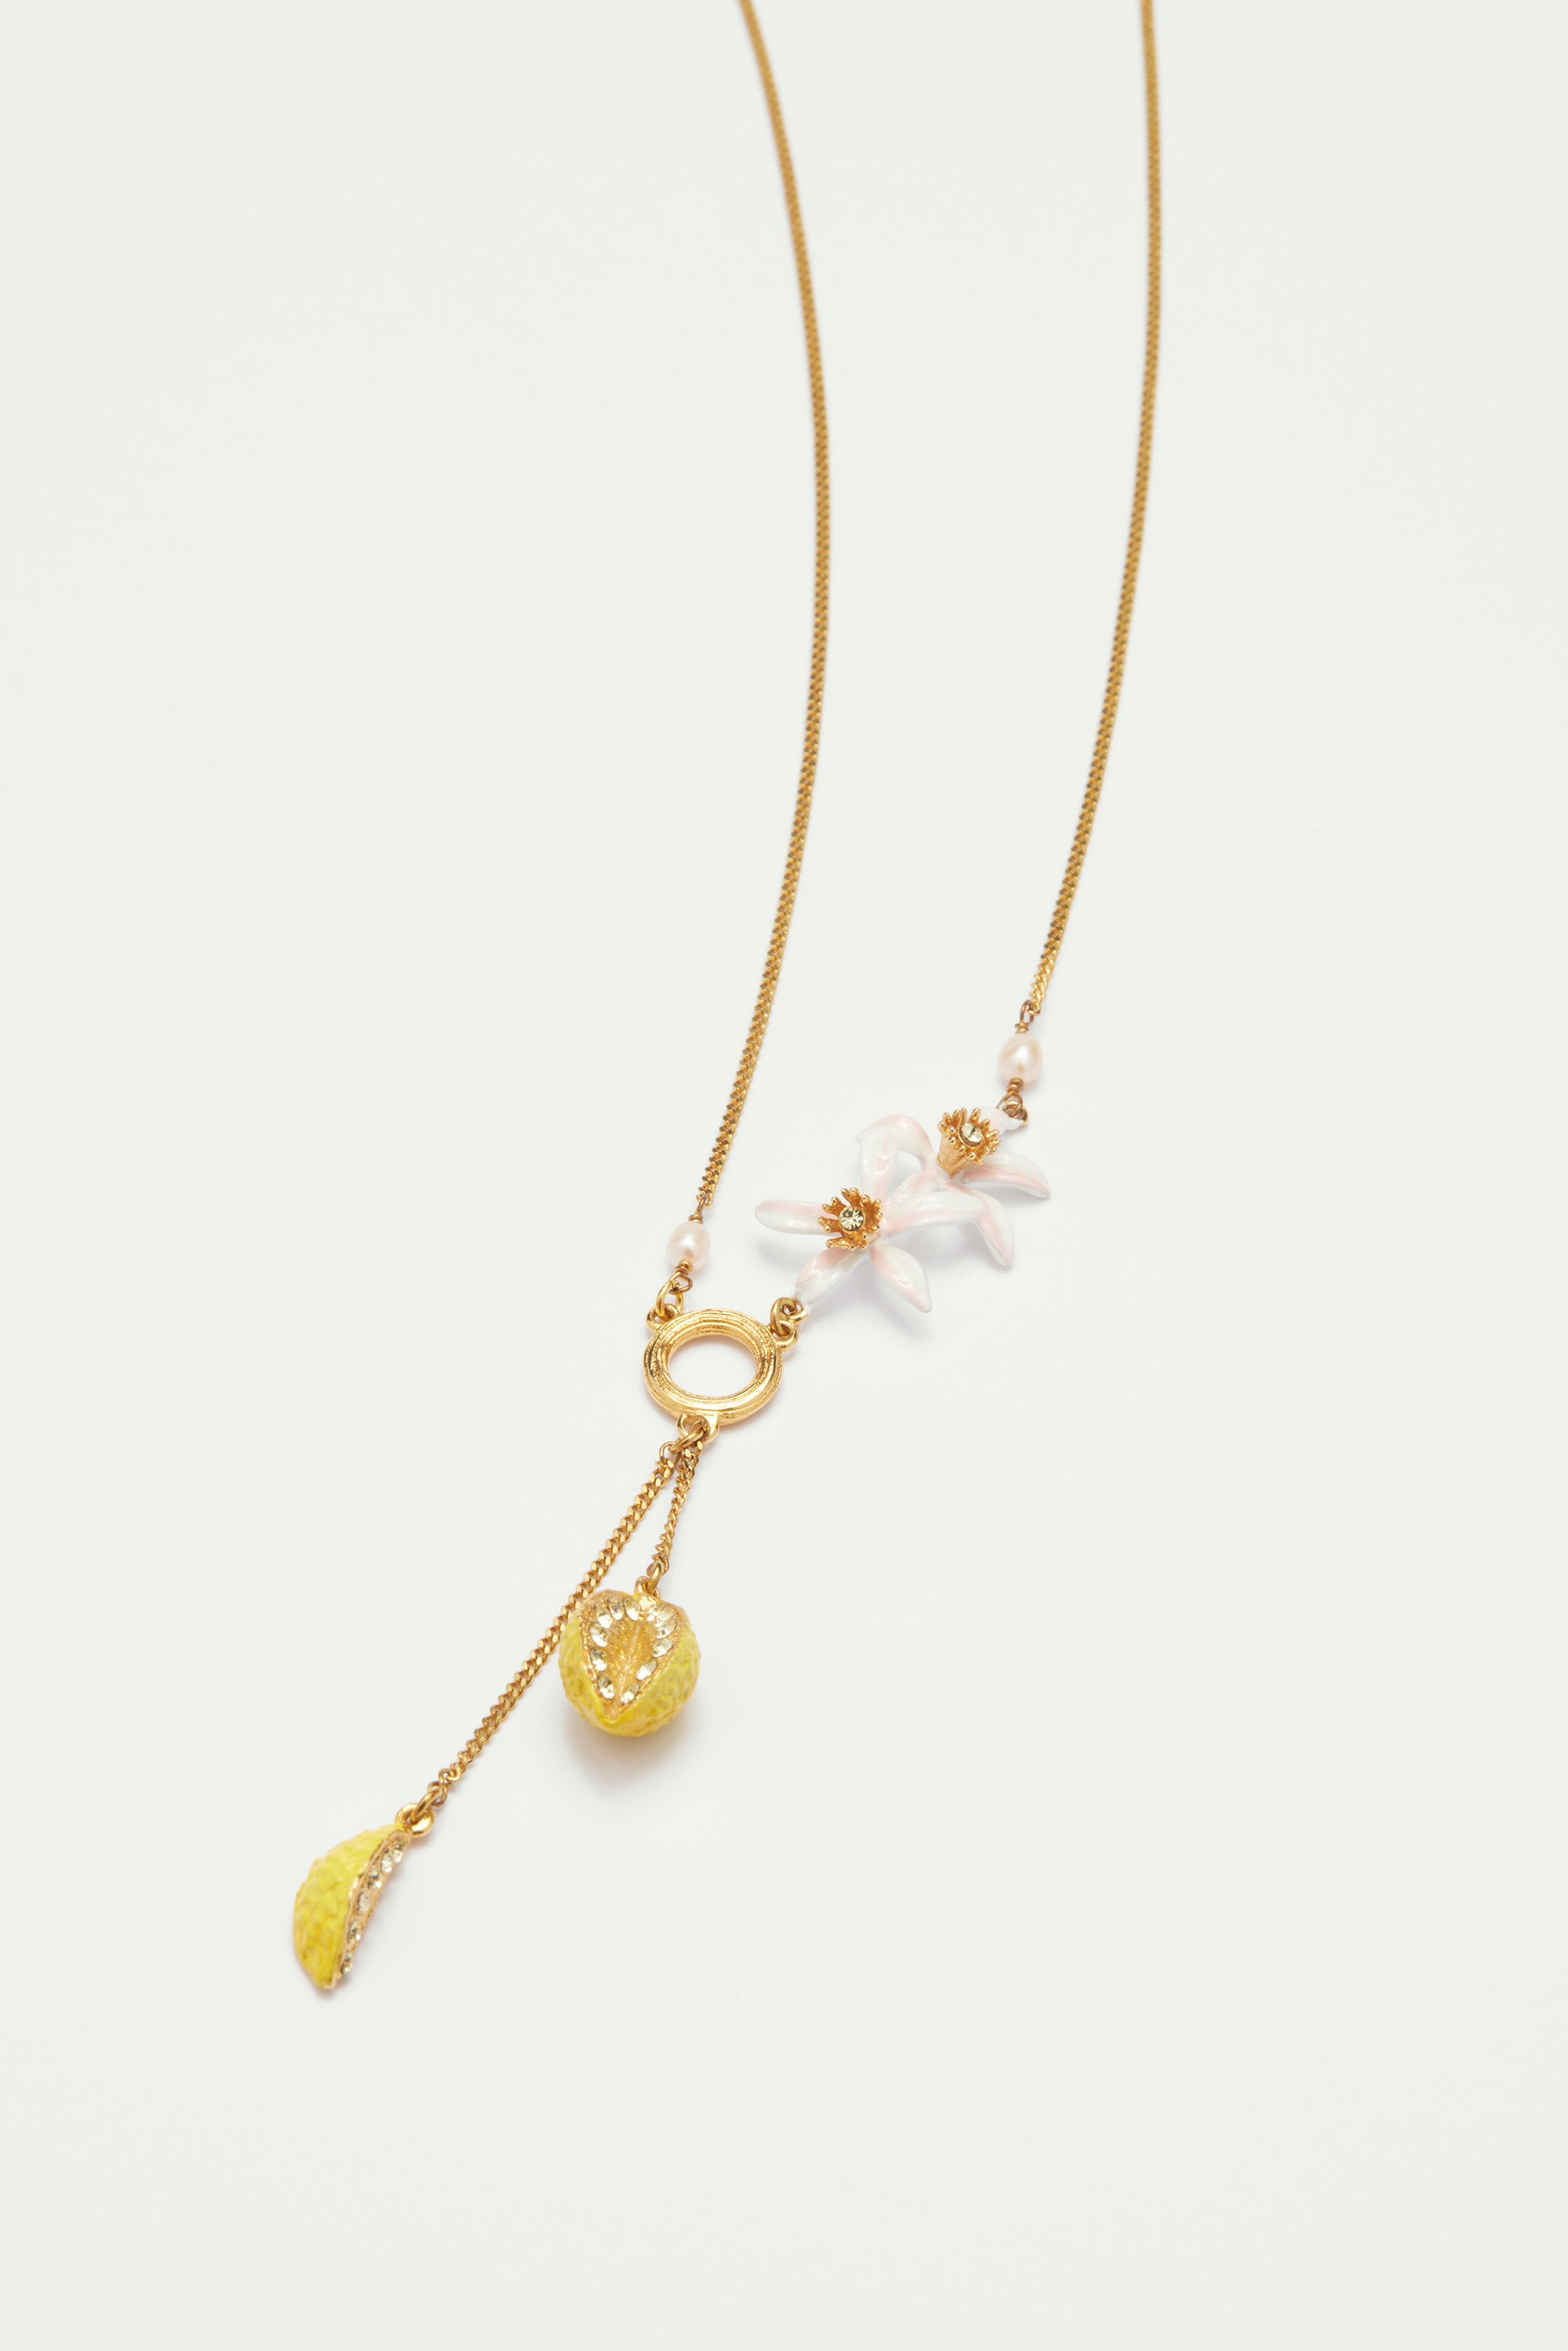 Lemon and lemon blossoms pendant necklace